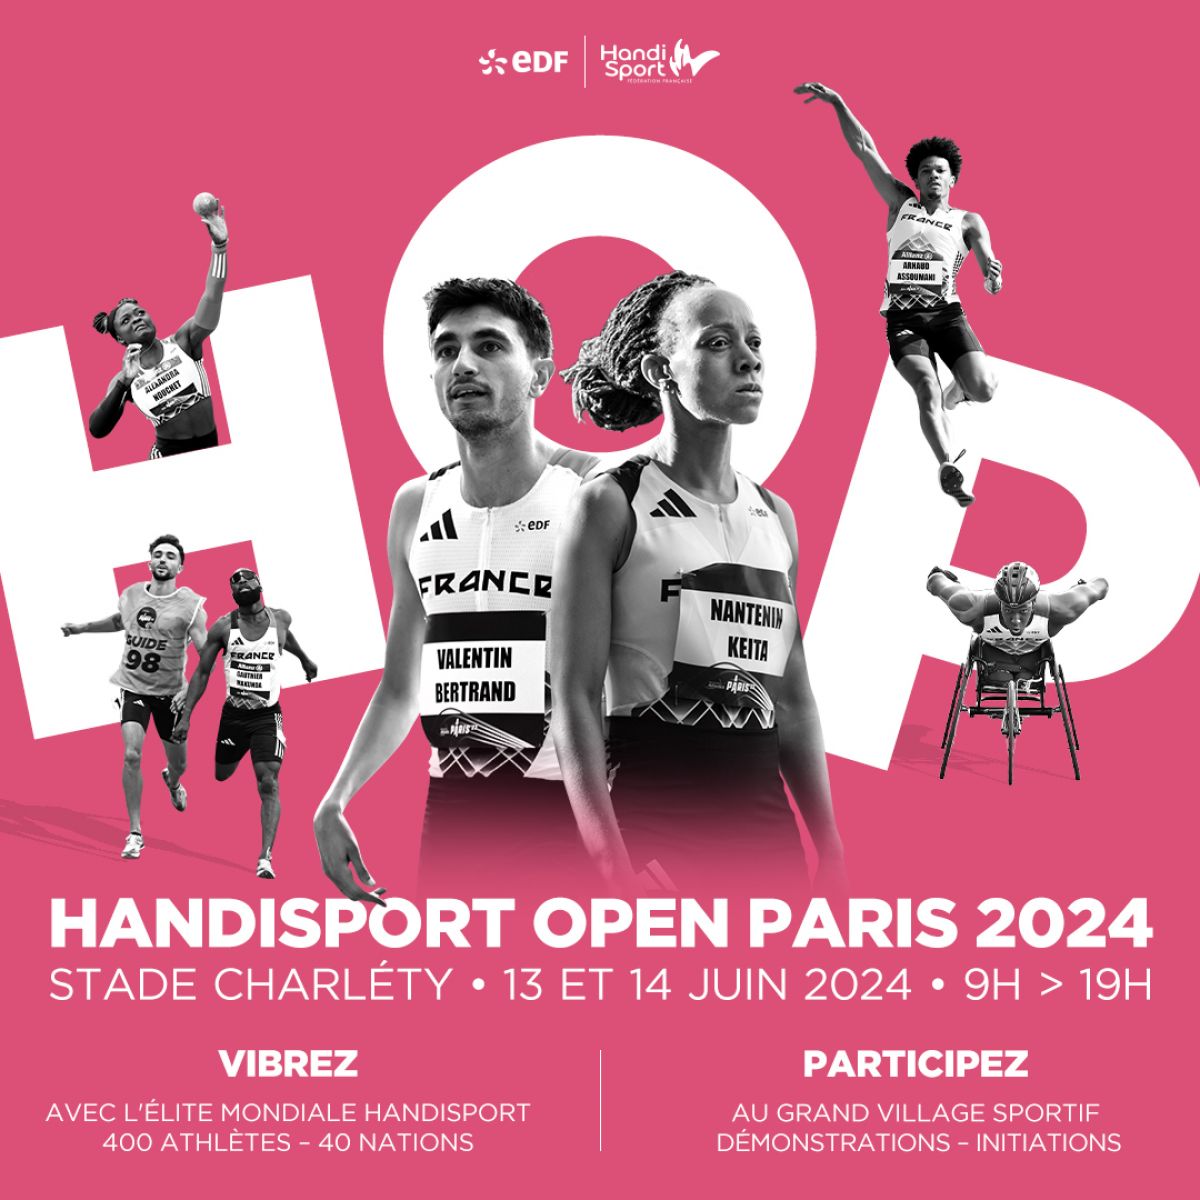 Handisport Open Paris 2024